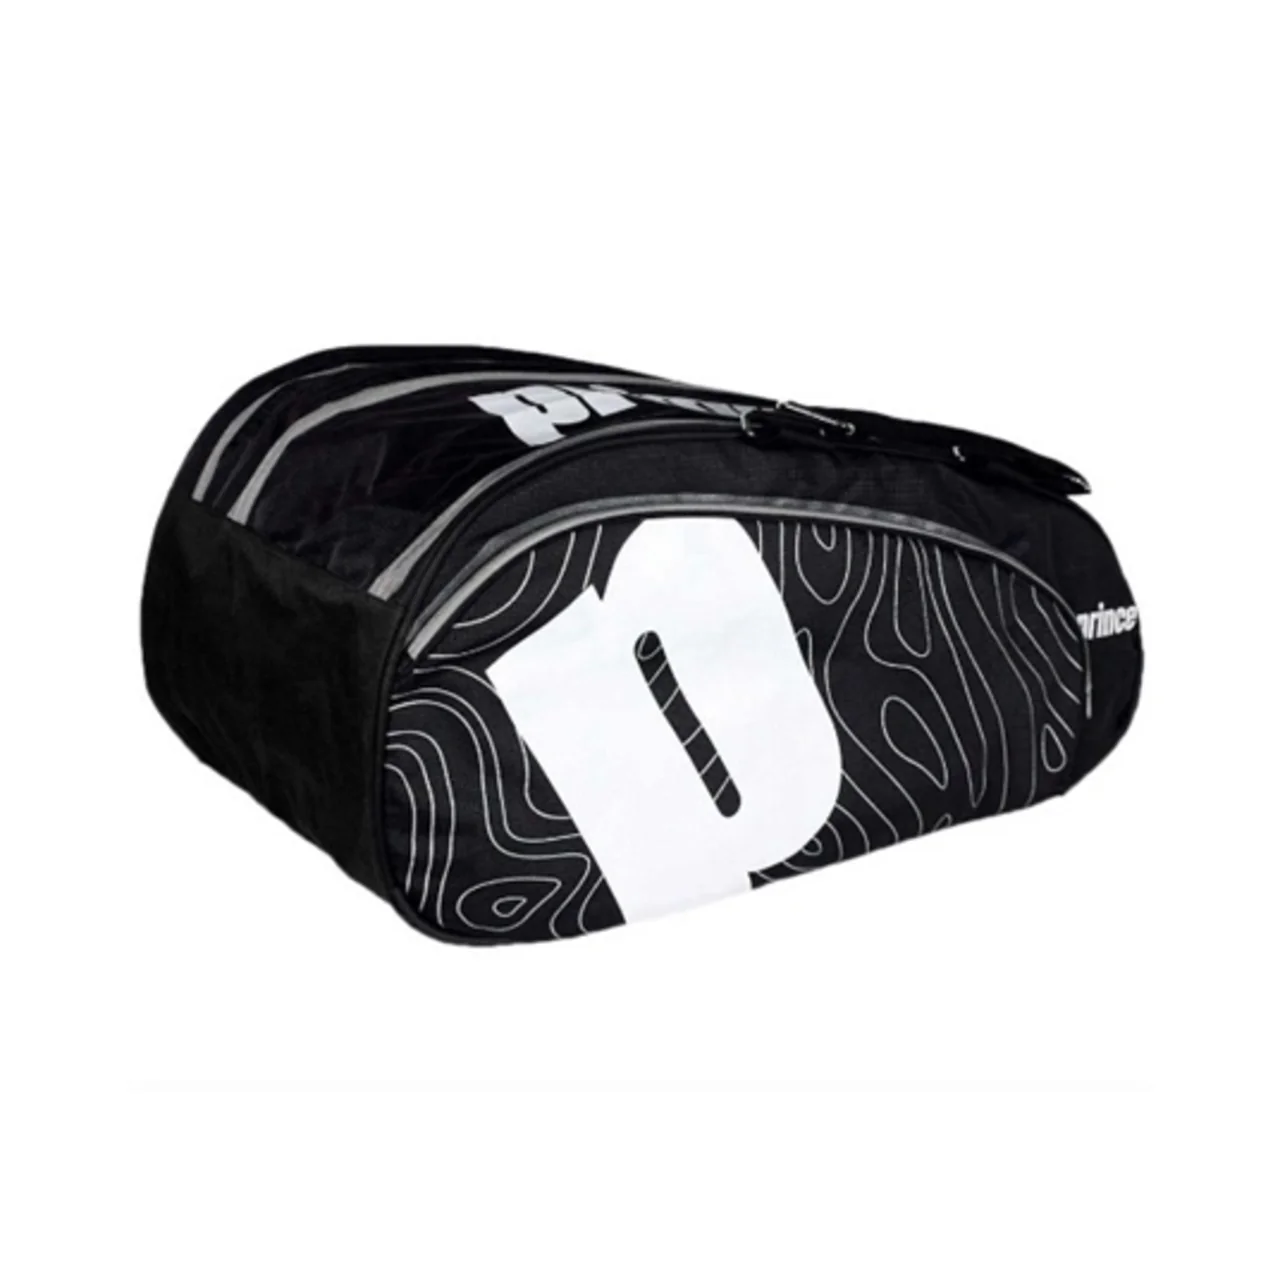 Prince Padel Premium Racket Bag